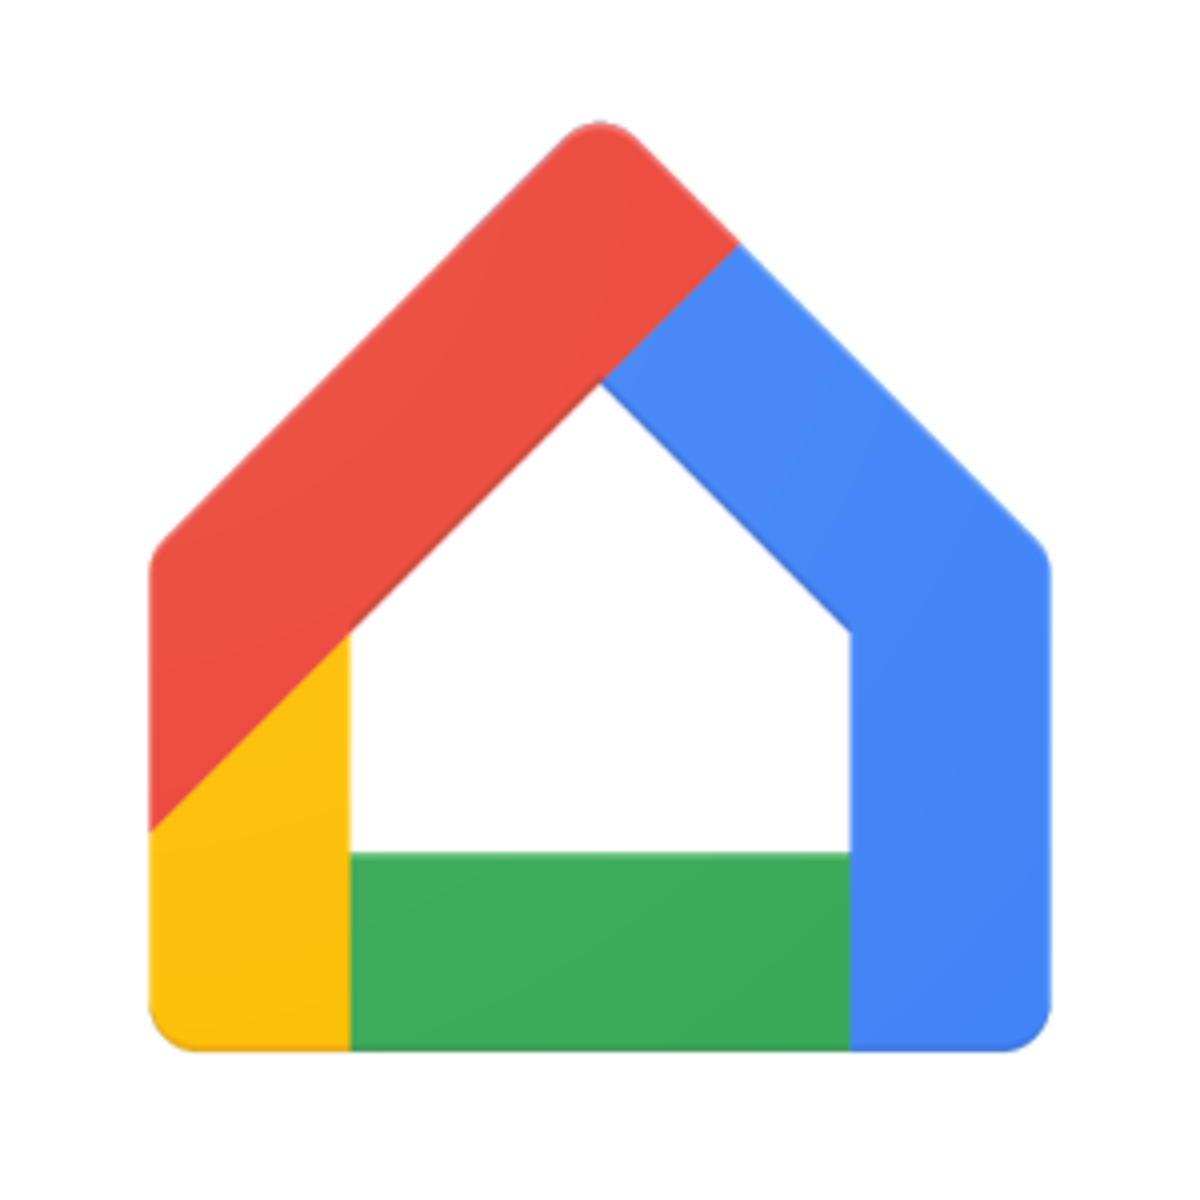 google chromecast home app windows 10